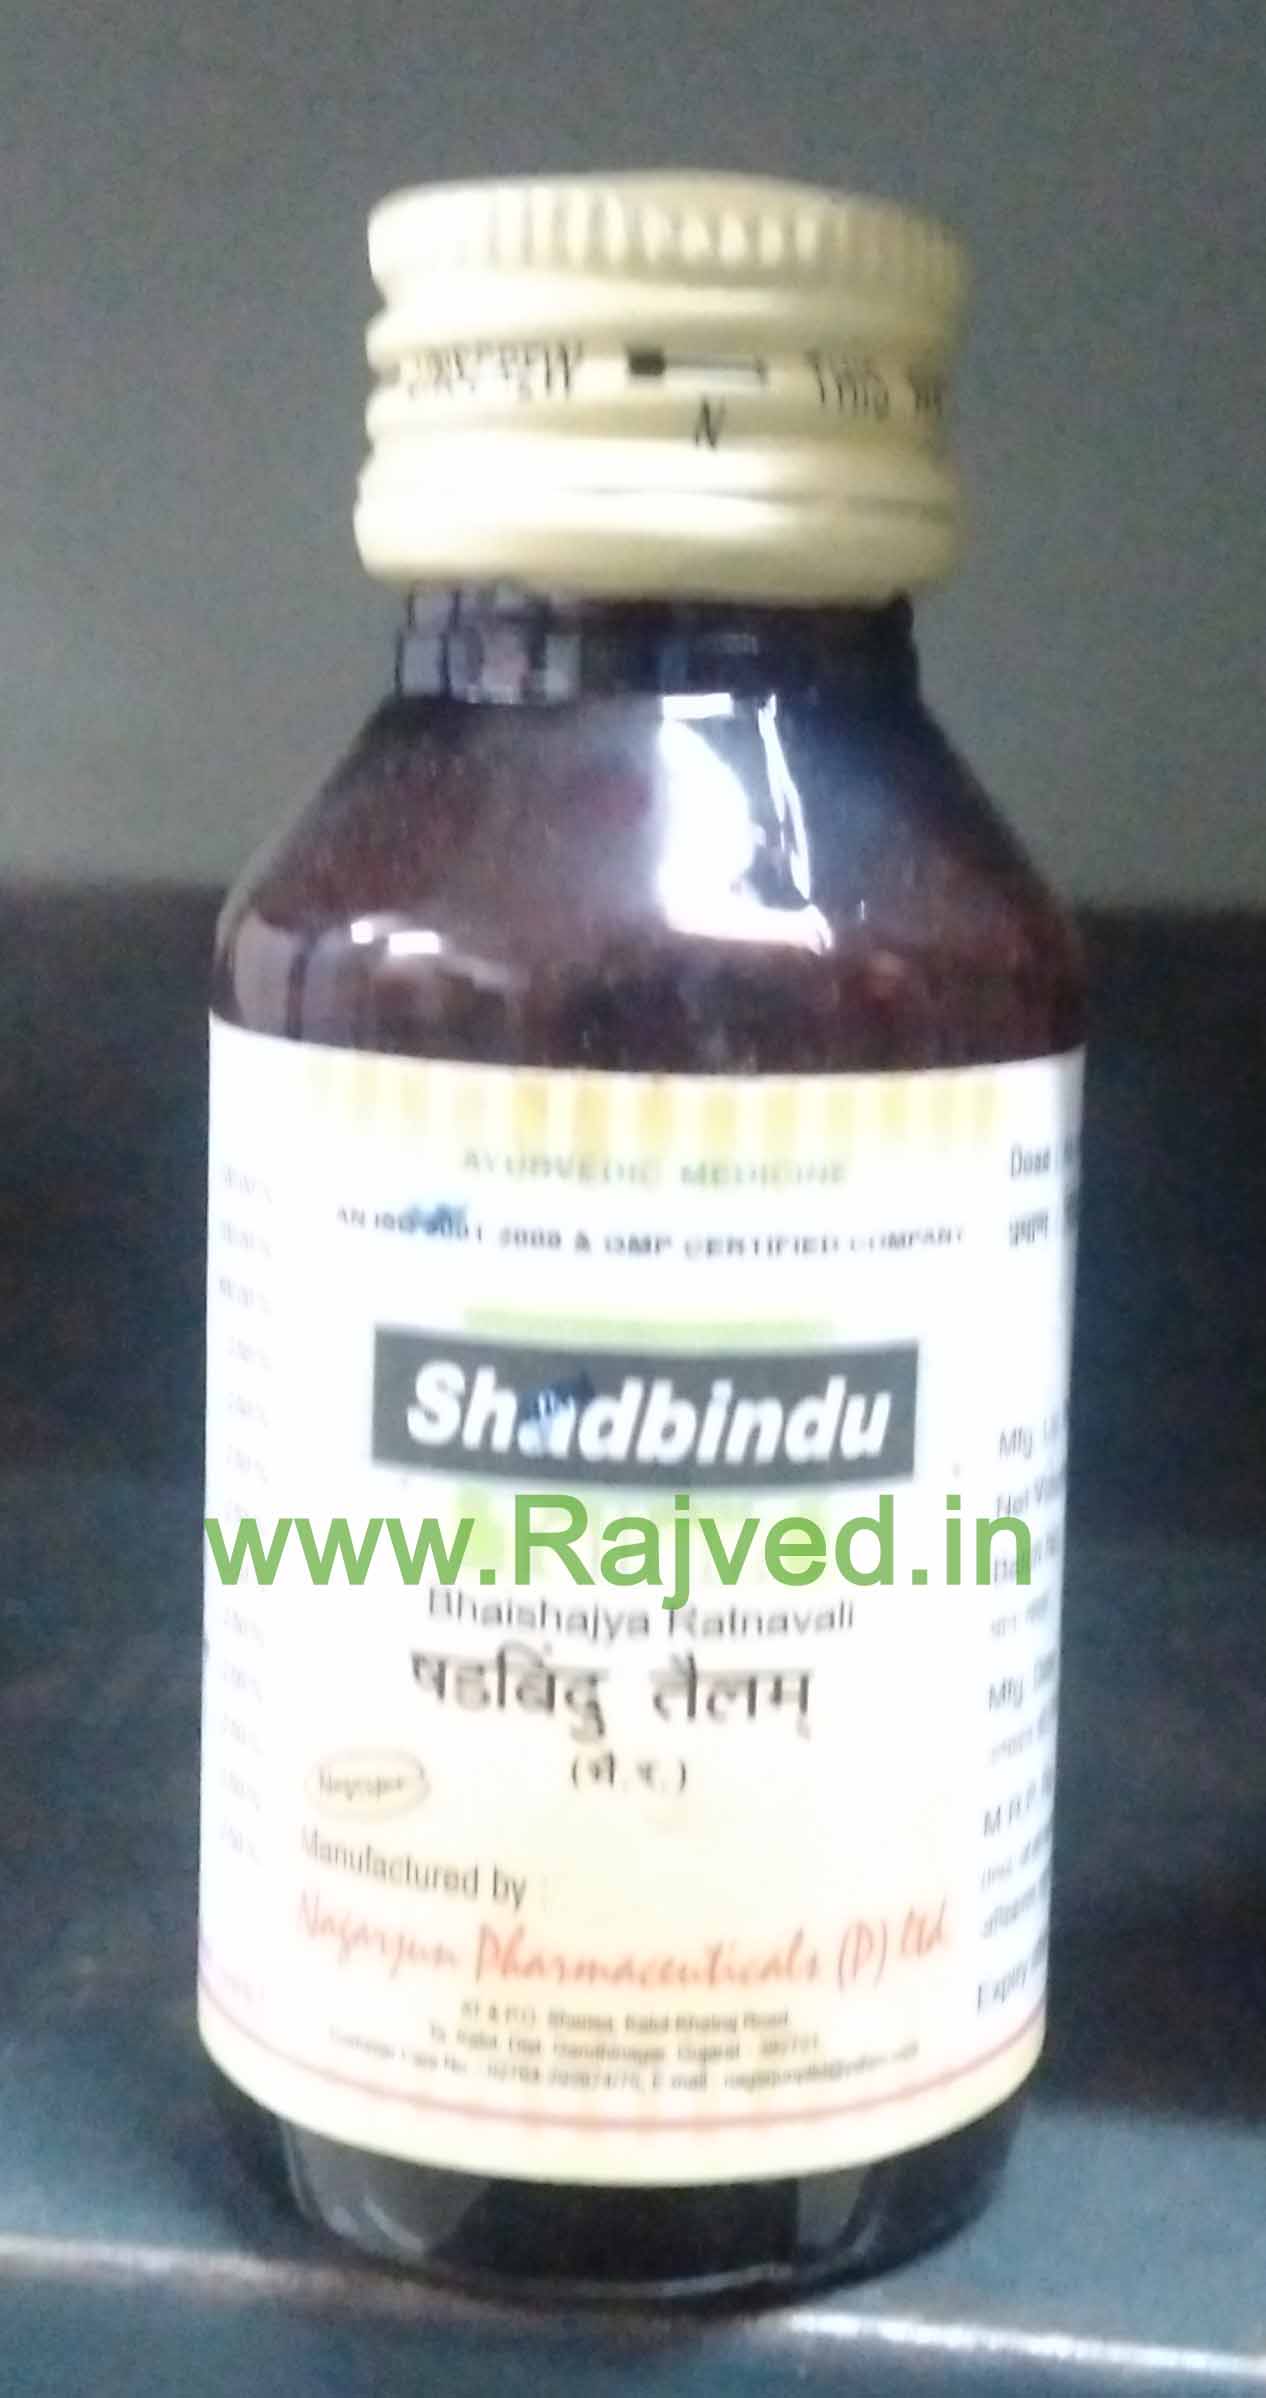 shadbindu tailam 50 ml upto 20% off nagarjun pharma gujarat